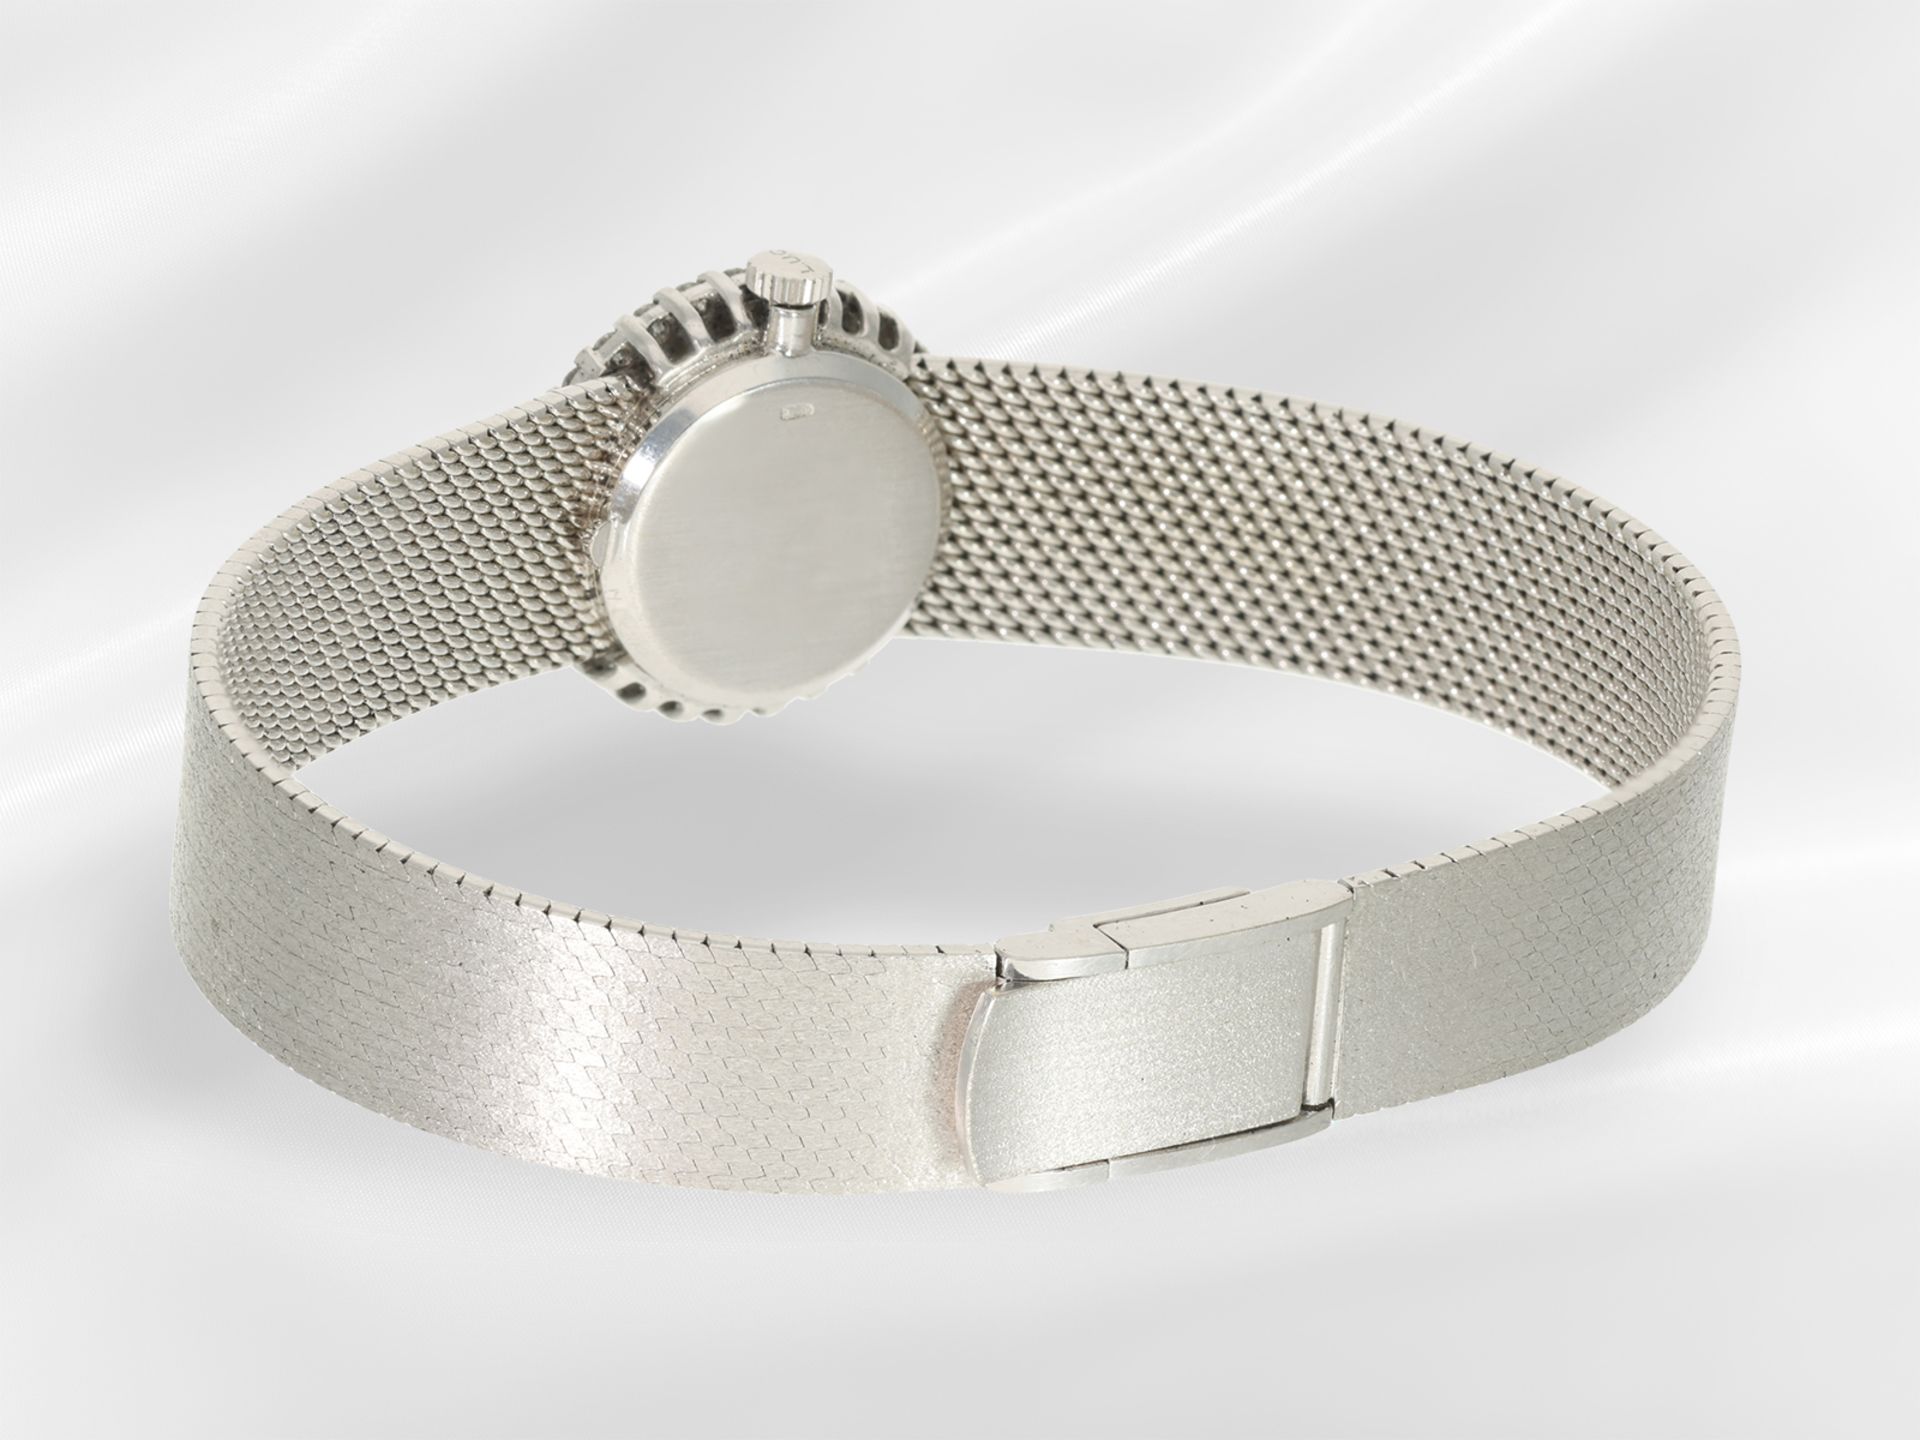 Armbanduhr: luxuriöse Damenuhr von Chopard mit Brillantlünette und Lapislazuli- Zifferblatt - Bild 4 aus 4